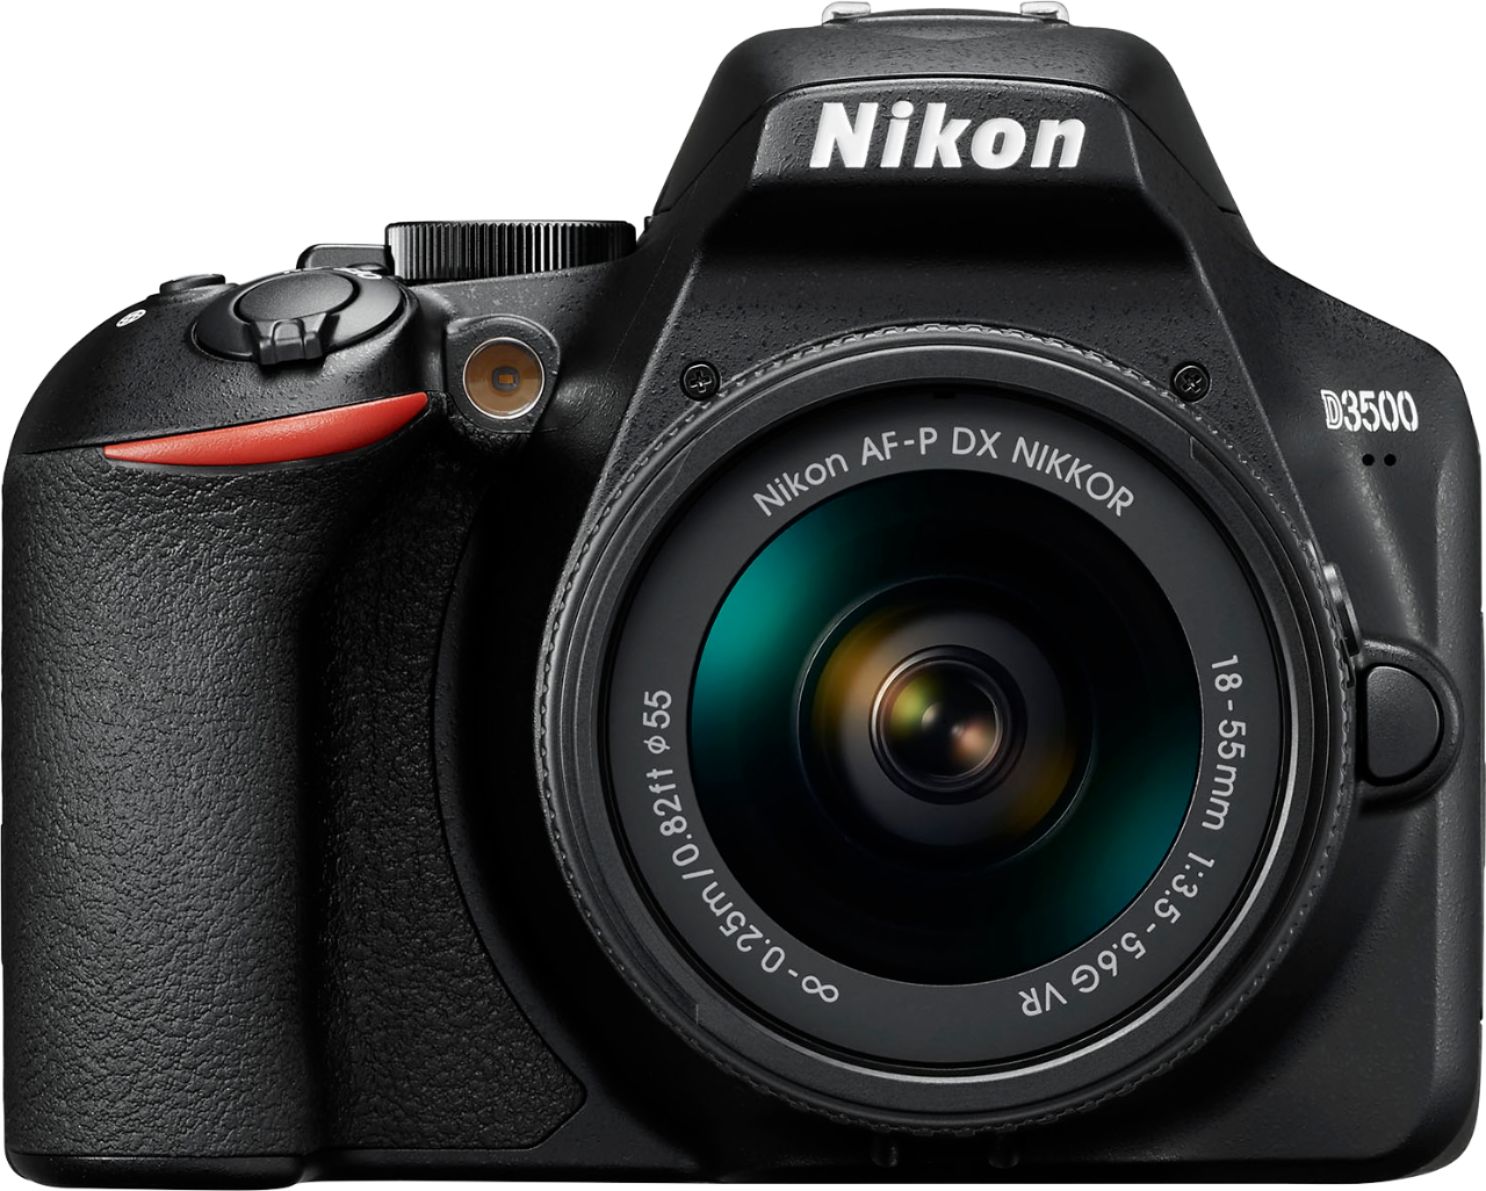 Rondlopen routine Gelijkenis Nikon D3500 DSLR Video Camera with AF-P DX NIKKOR 18-55mm f/3.5-5.6G VR  Lens Black 1590 - Best Buy